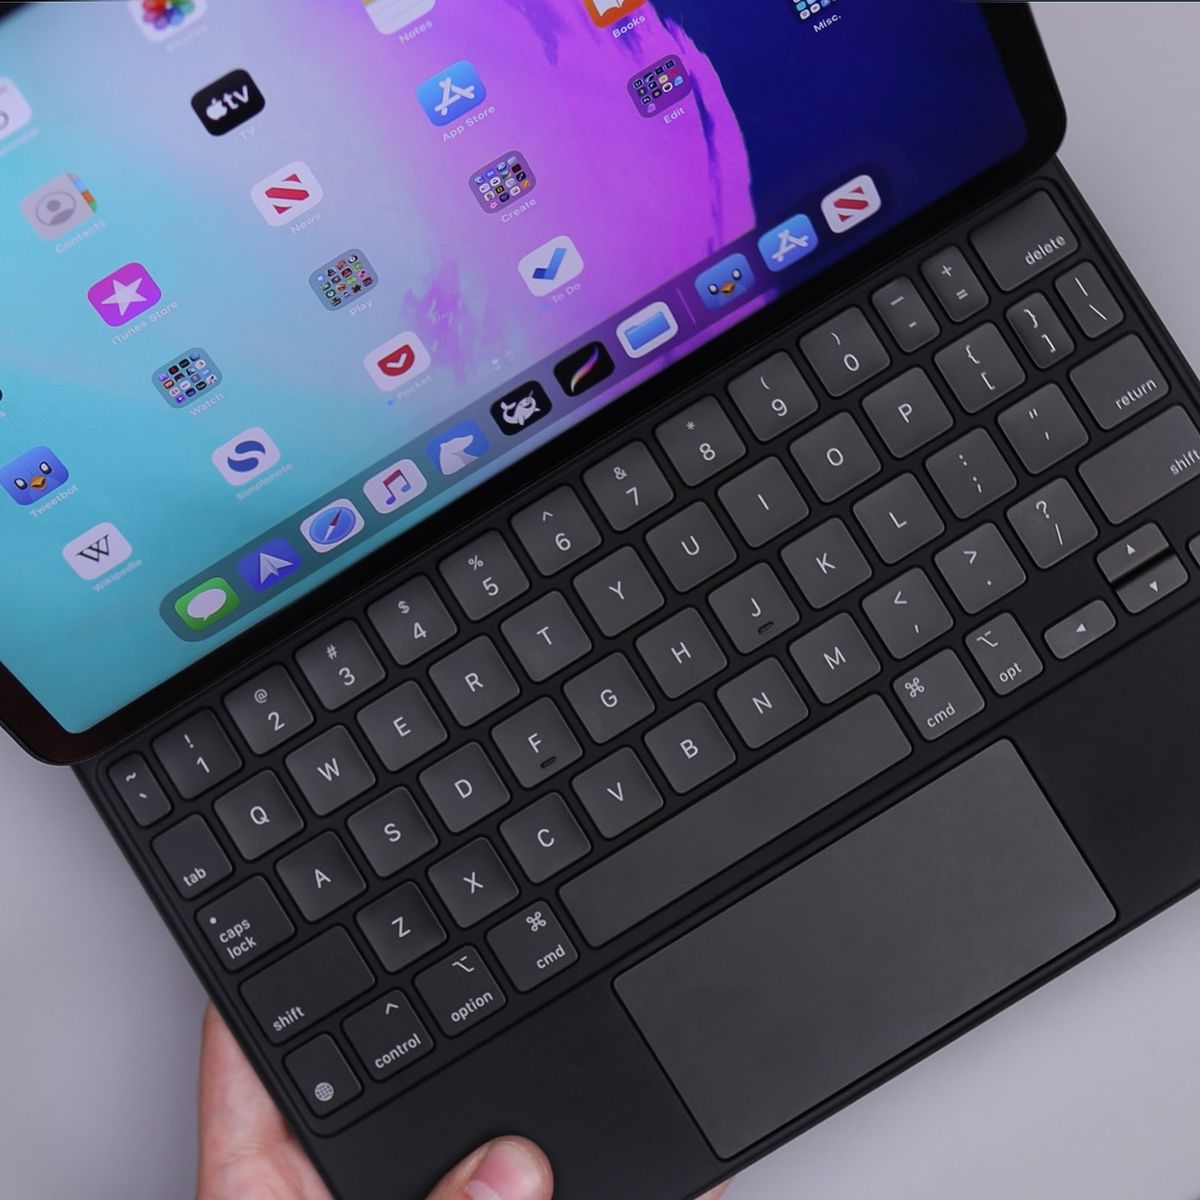 Estas son las mejores alternativas de fundas teclado para tu iPad